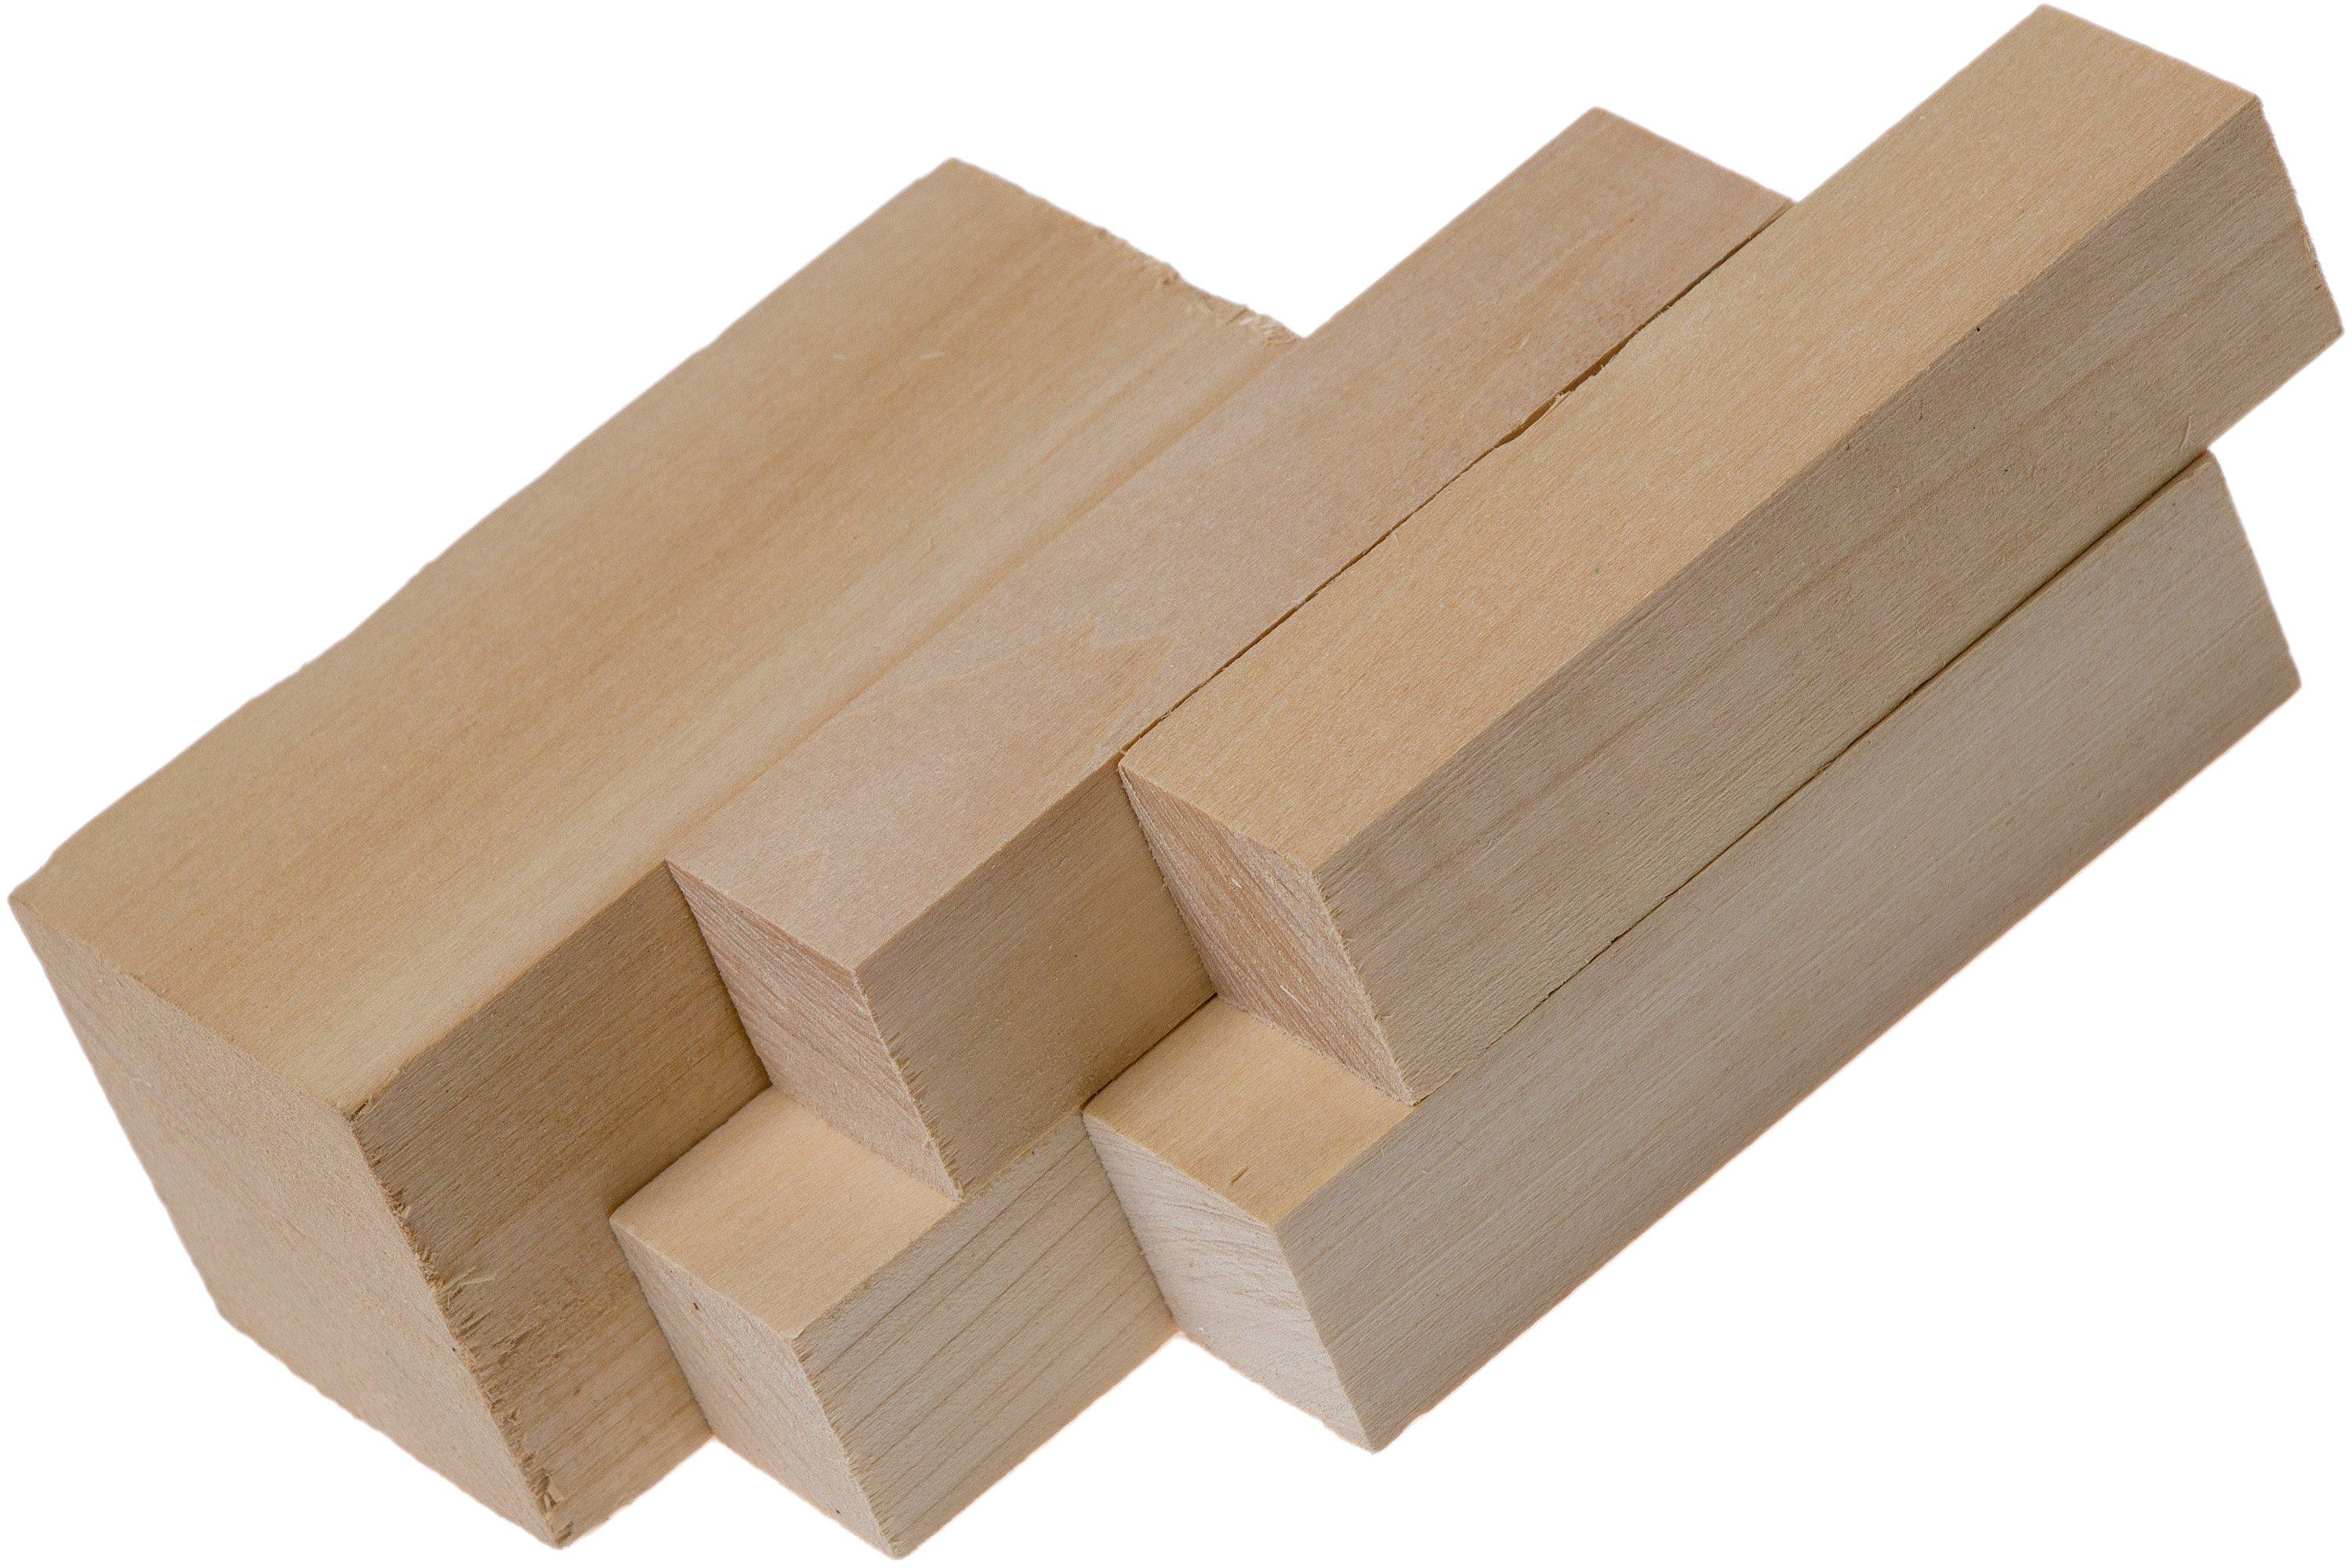 BeaverCraft Wood Carving Blocks BW18, Juego de 18 piezas de bloques de madera  para tallar madera